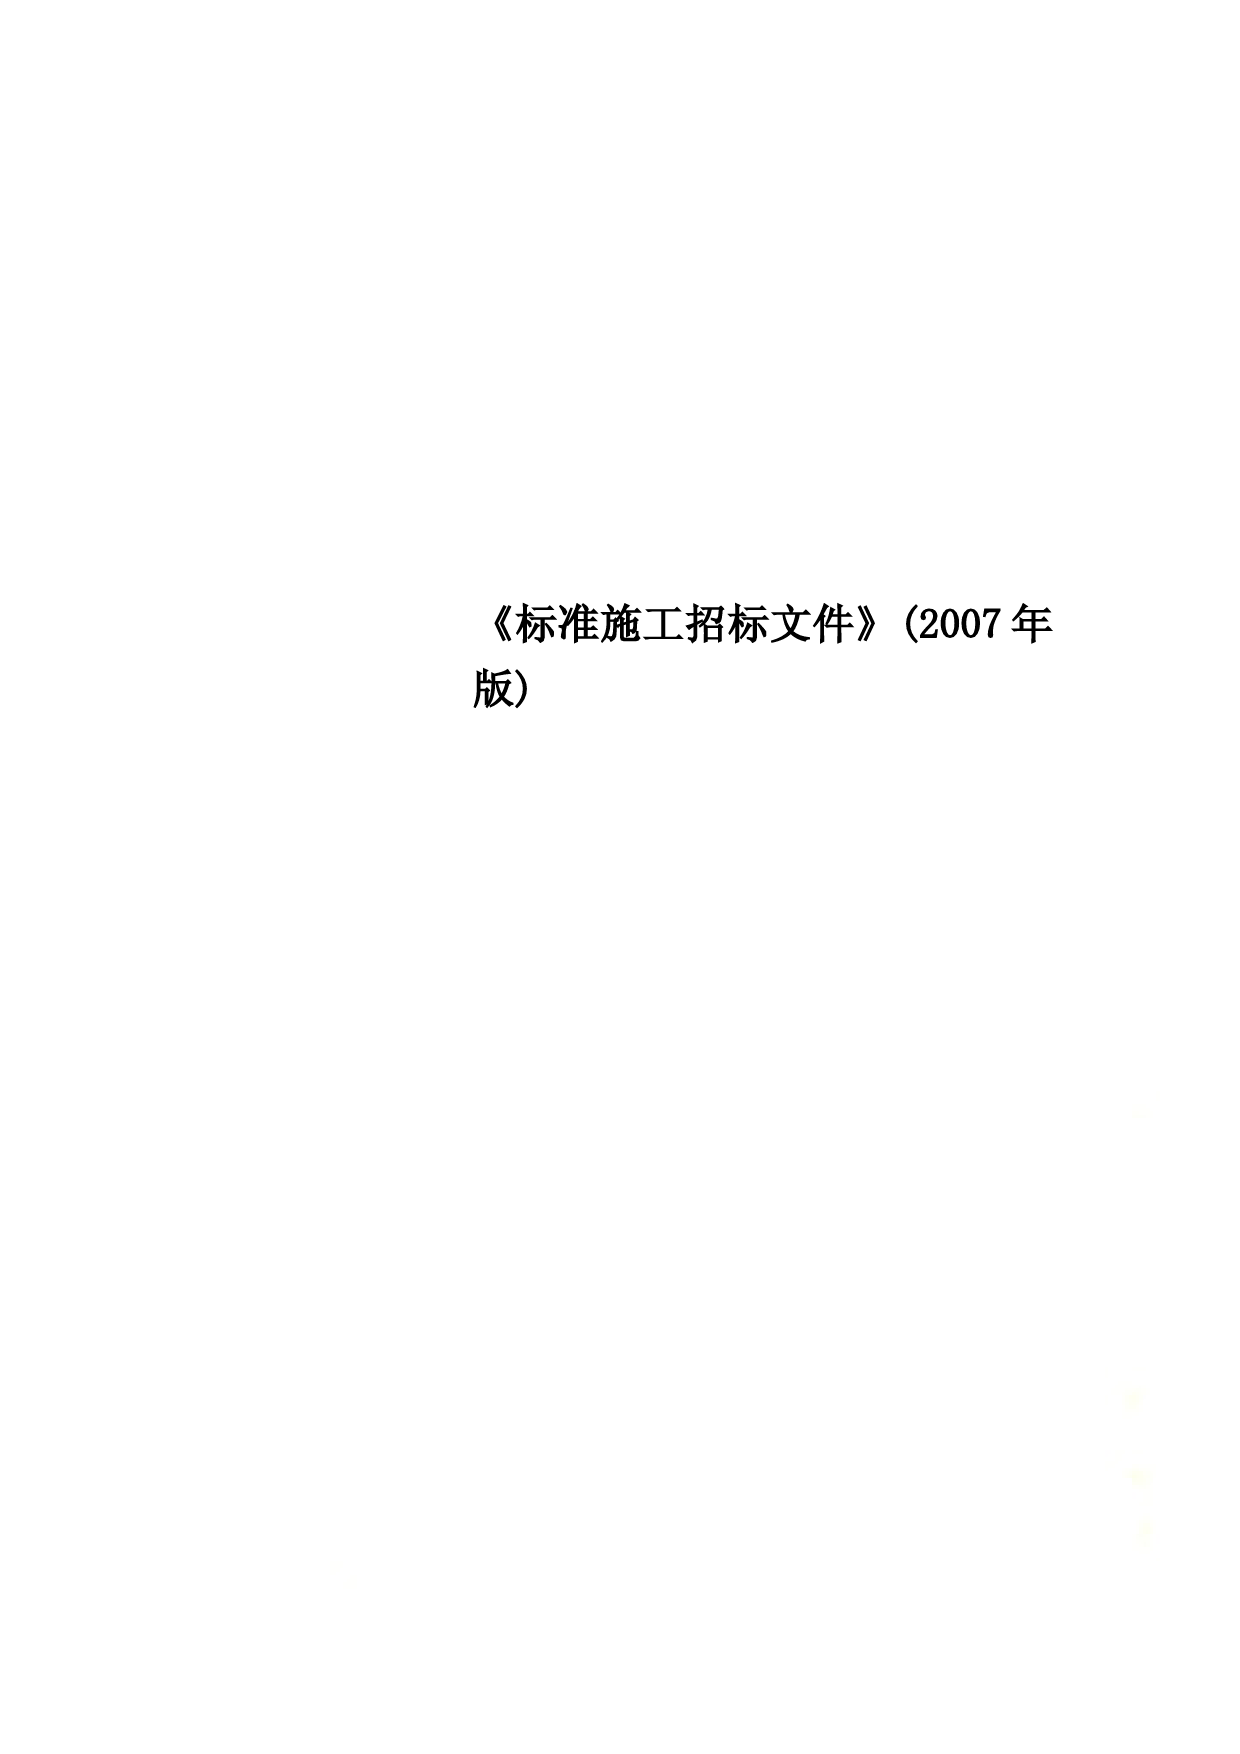 《标准施工招标文件》(2007年版) (2)